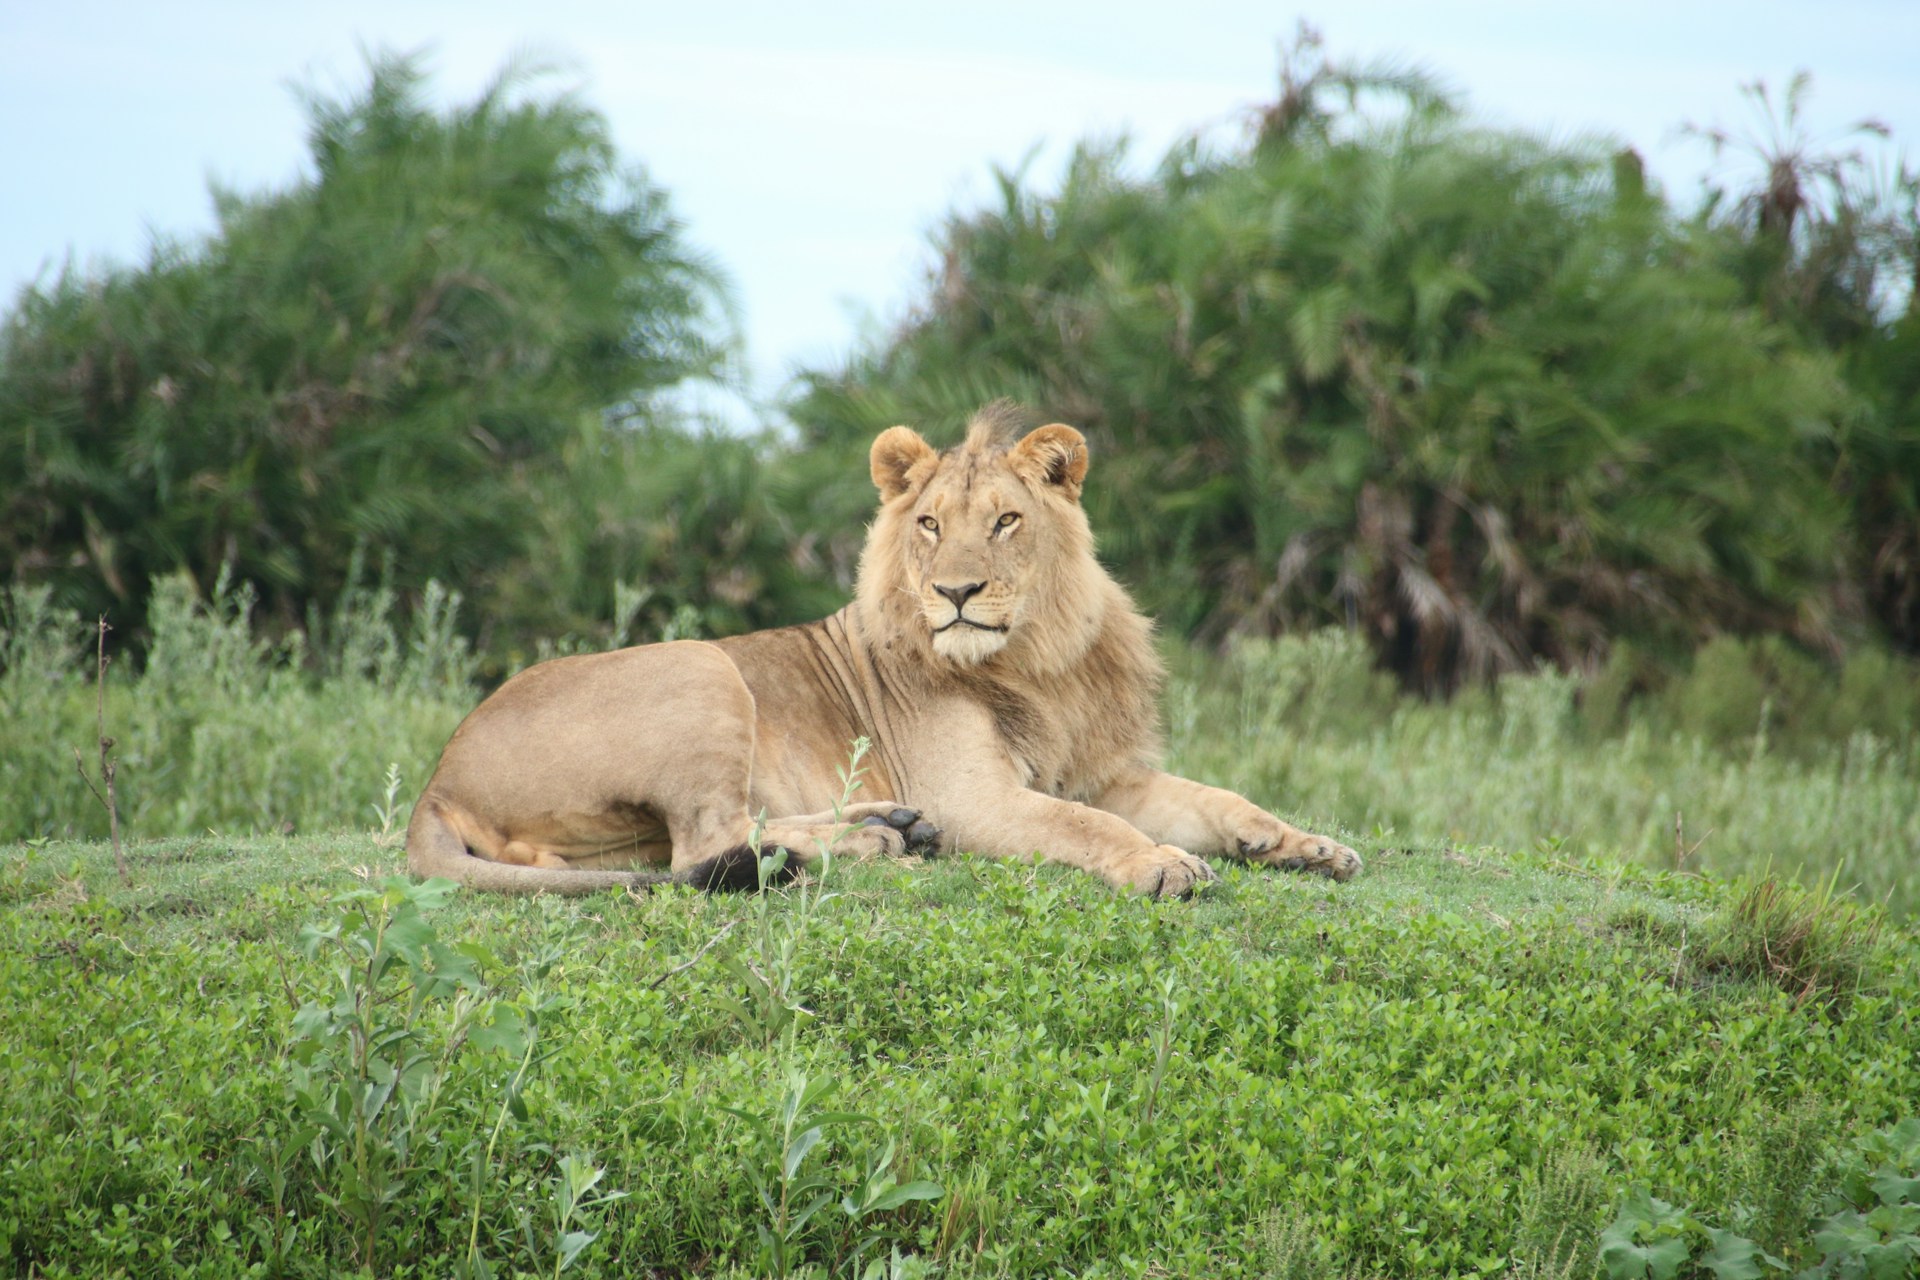 El león es un felino de tipo pantherinae. Posee la capacidad de rugir, mayor musculatura y fuerza. Foto de Travel Explore Protect.